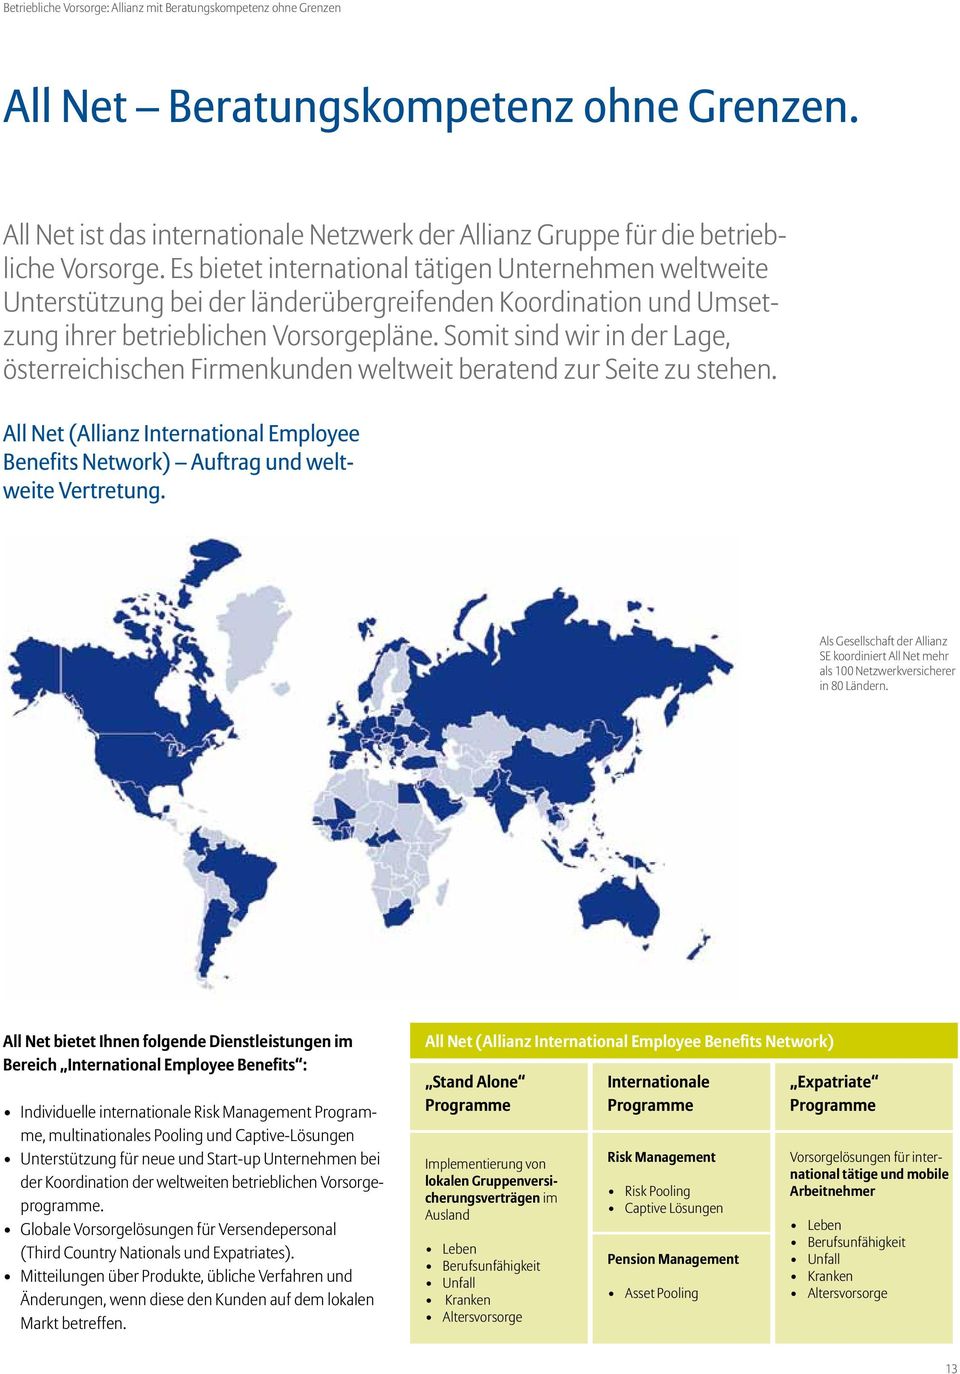 Somit sind wir in der Lage, österreichischen Firmenkunden weltweit beratend zur Seite zu stehen. All Net (Allianz International Employee Benefits Network) Auftrag und weltweite Vertretung.